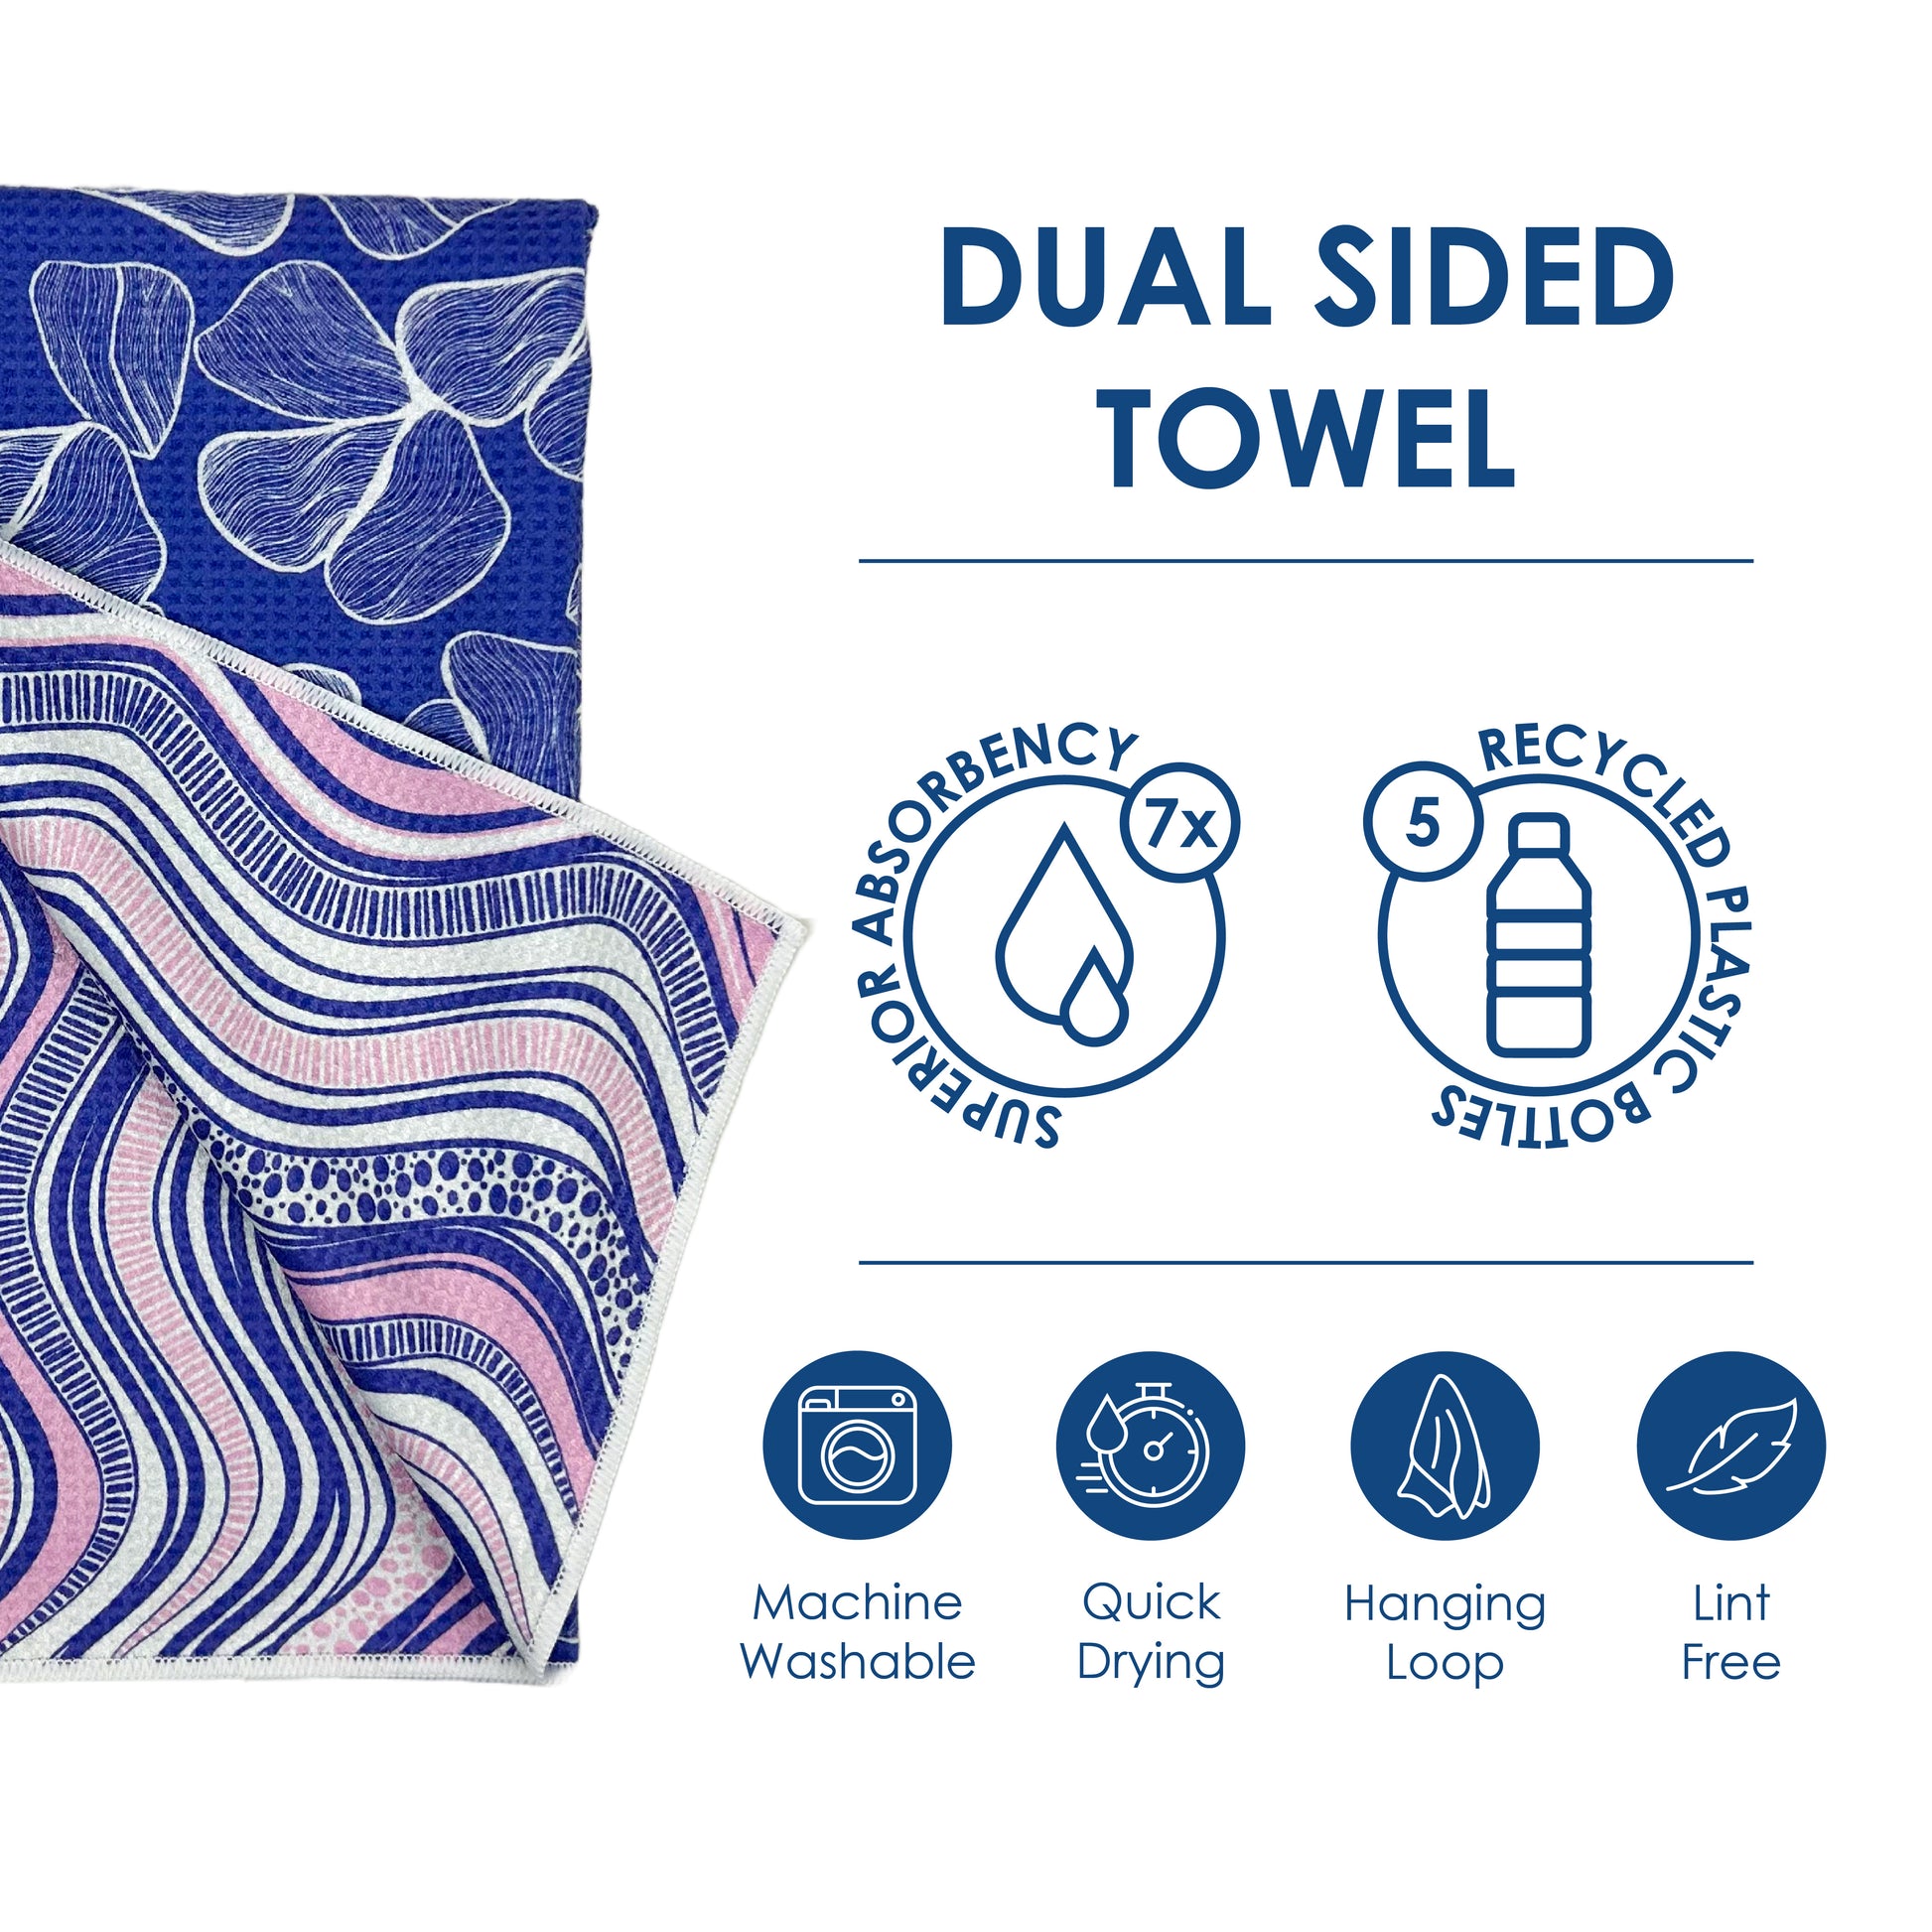 Waves - Kitchen Tea Towel & Hand towel – Buzzee